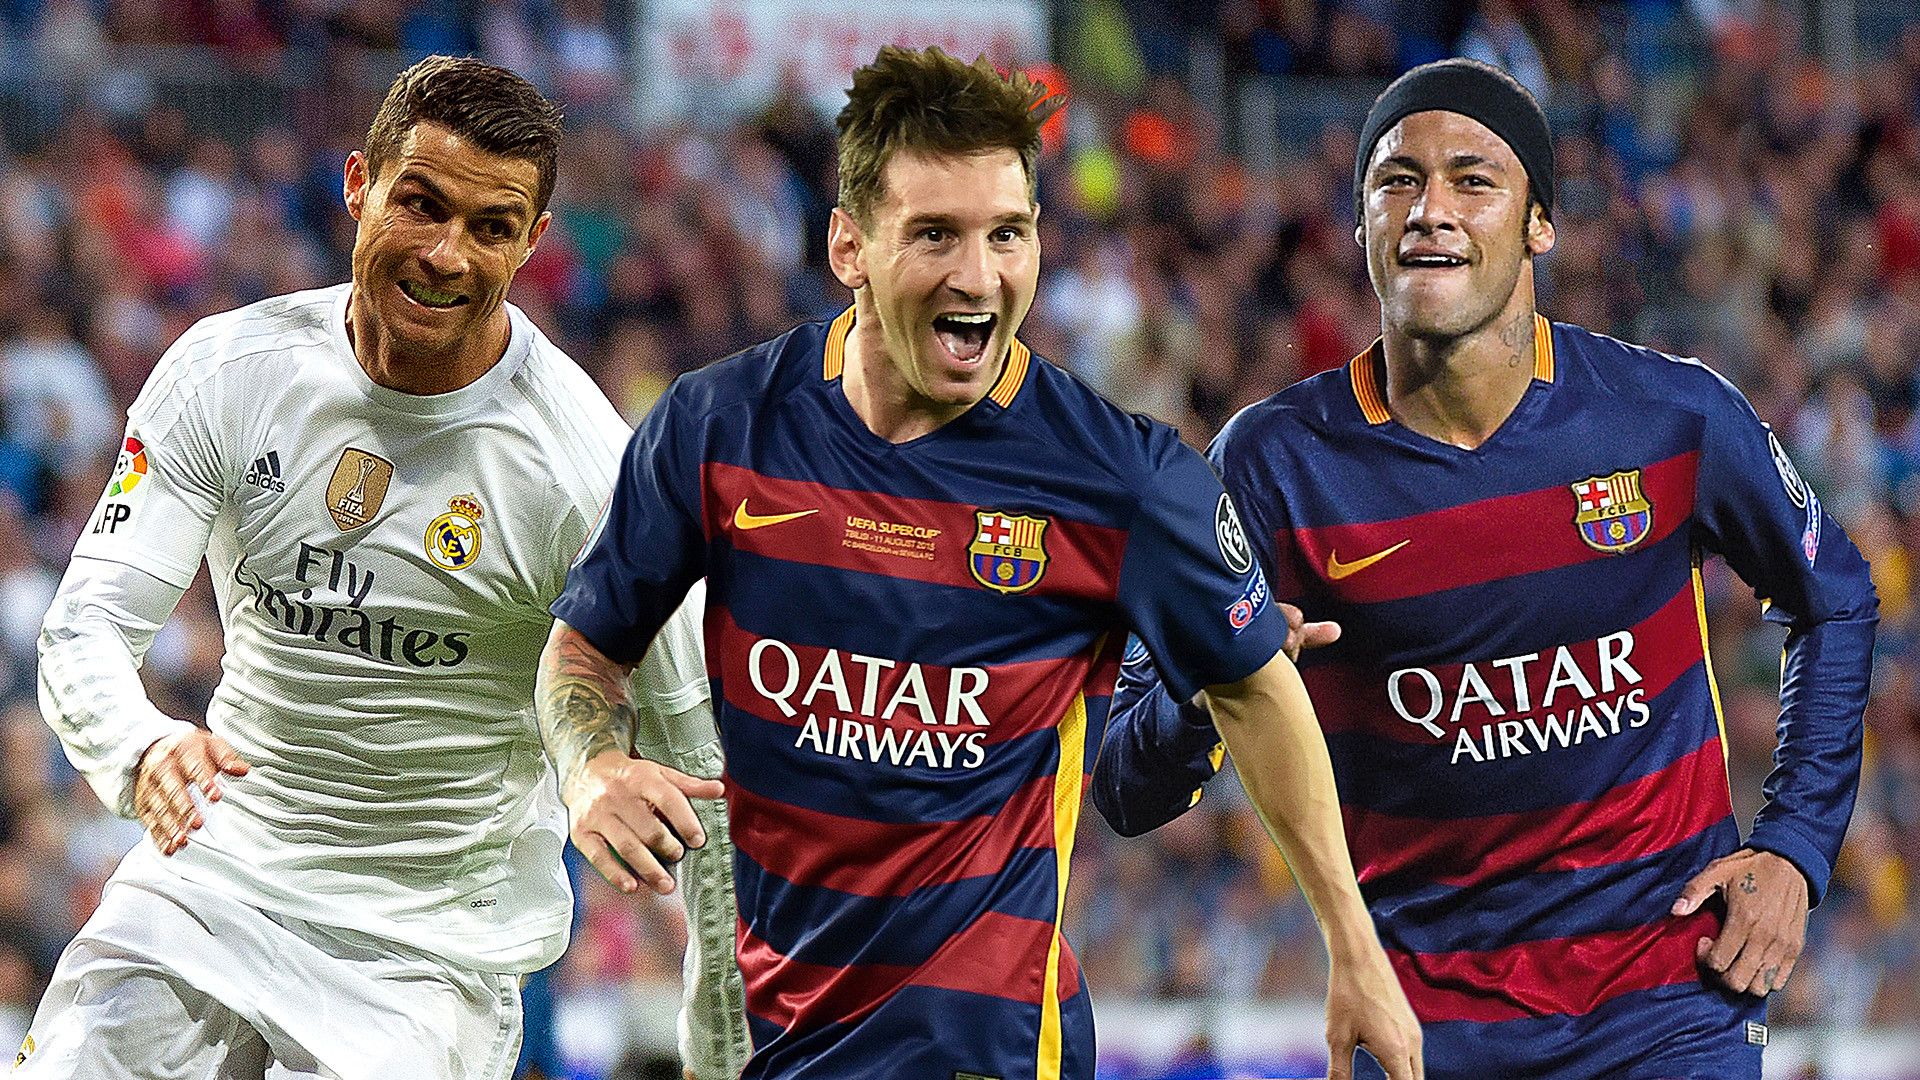 Messi, Neymar và Ronaldo - họ là những cầu thủ tài năng và gây ấn tượng nhất trong làng bóng đá hiện nay! Hãy xem hình ảnh liên quan đến ba ngôi sao này để tận hưởng niềm đam mê bóng đá!